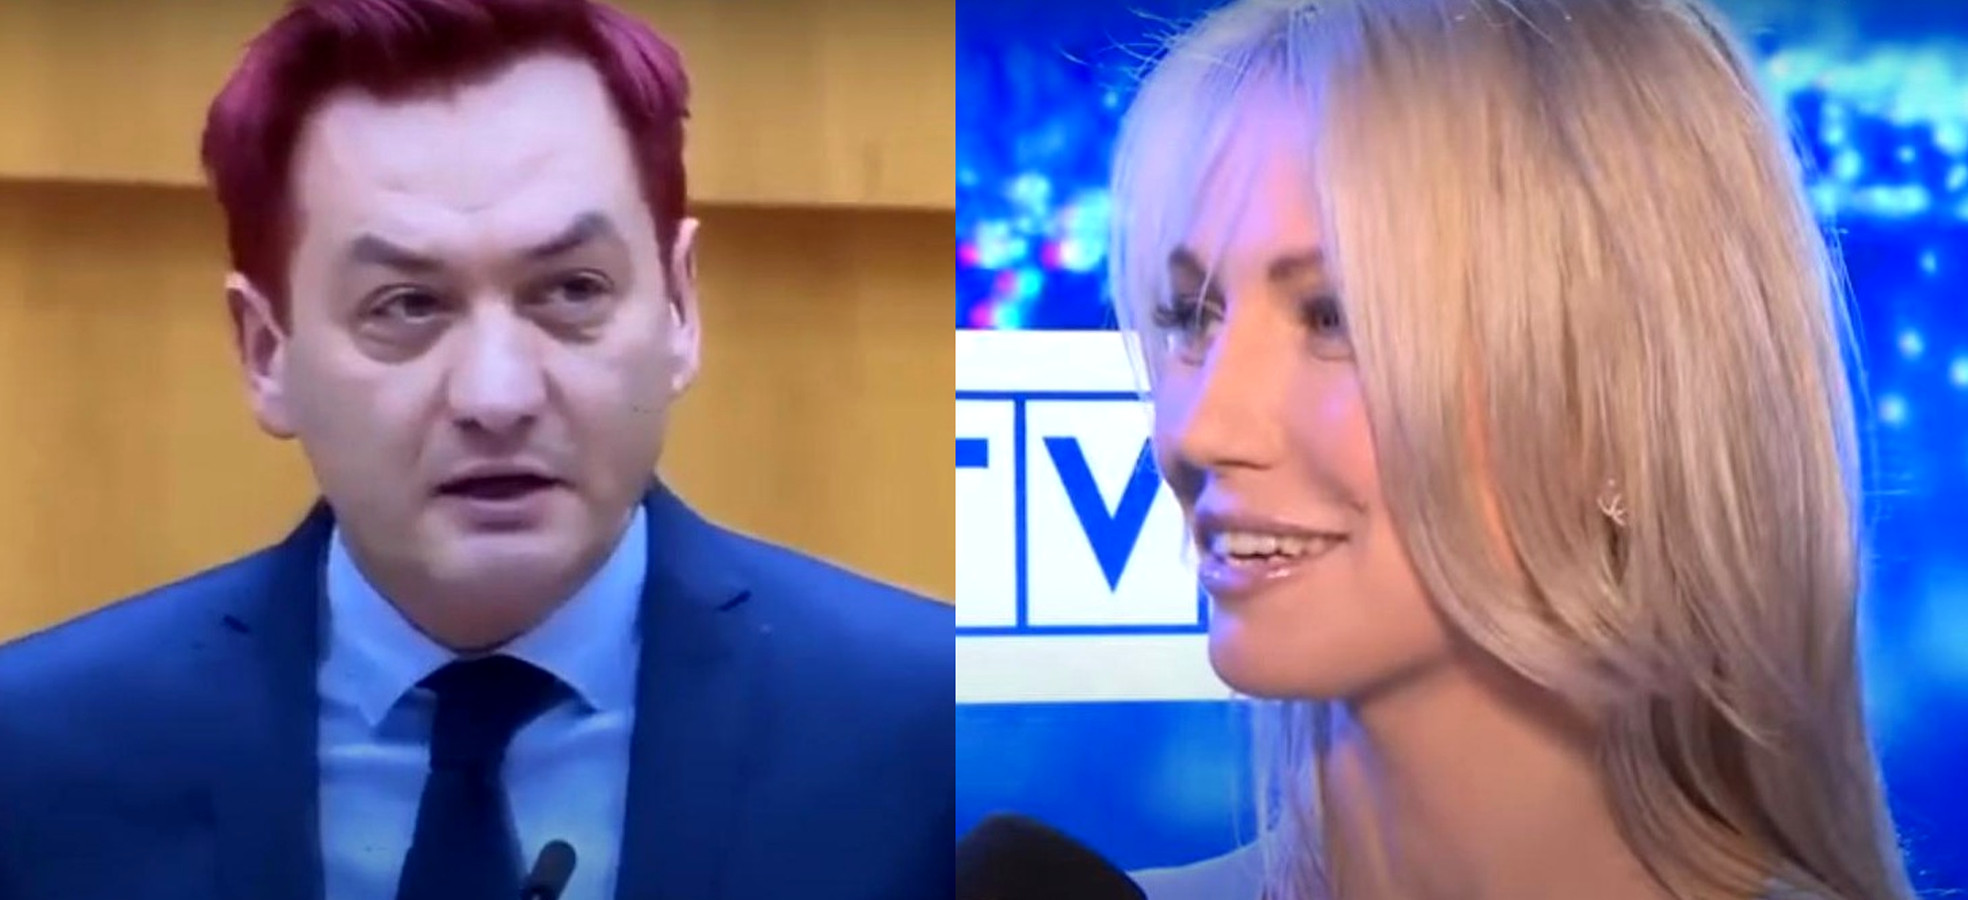 propolski.pl: Ogórek wyśmiała fryzurę Biedronia